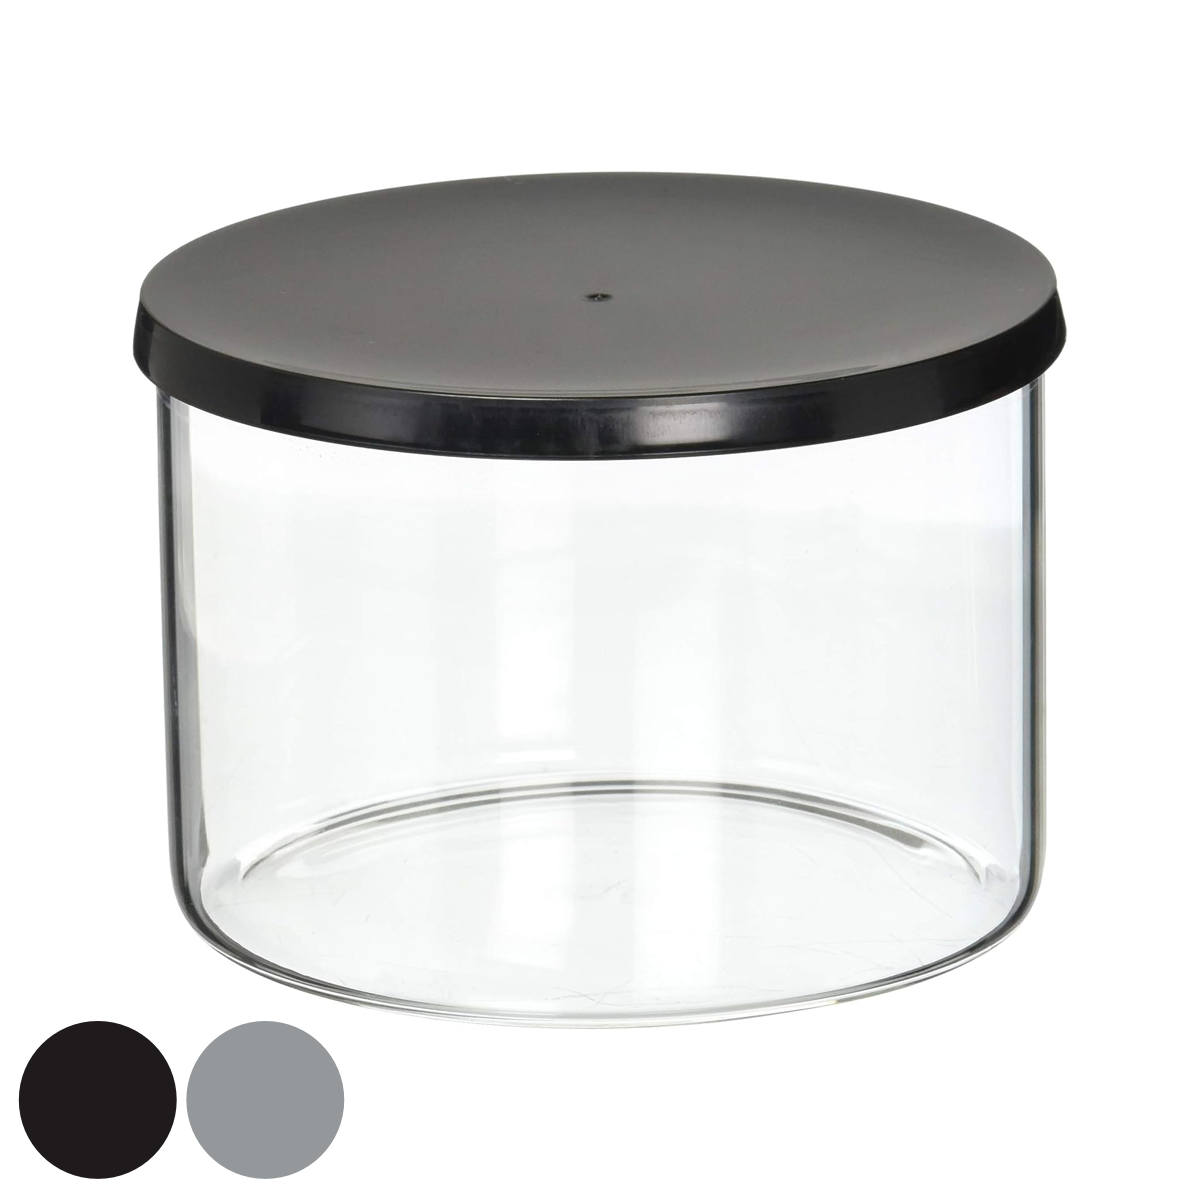 保存容器 ガラス製 SMITH-BRINDLE 耐熱ガラス コンテナ 300ml （ ガラス キャニスター ガラス容器 フードストッカー フードコンテナ 保存